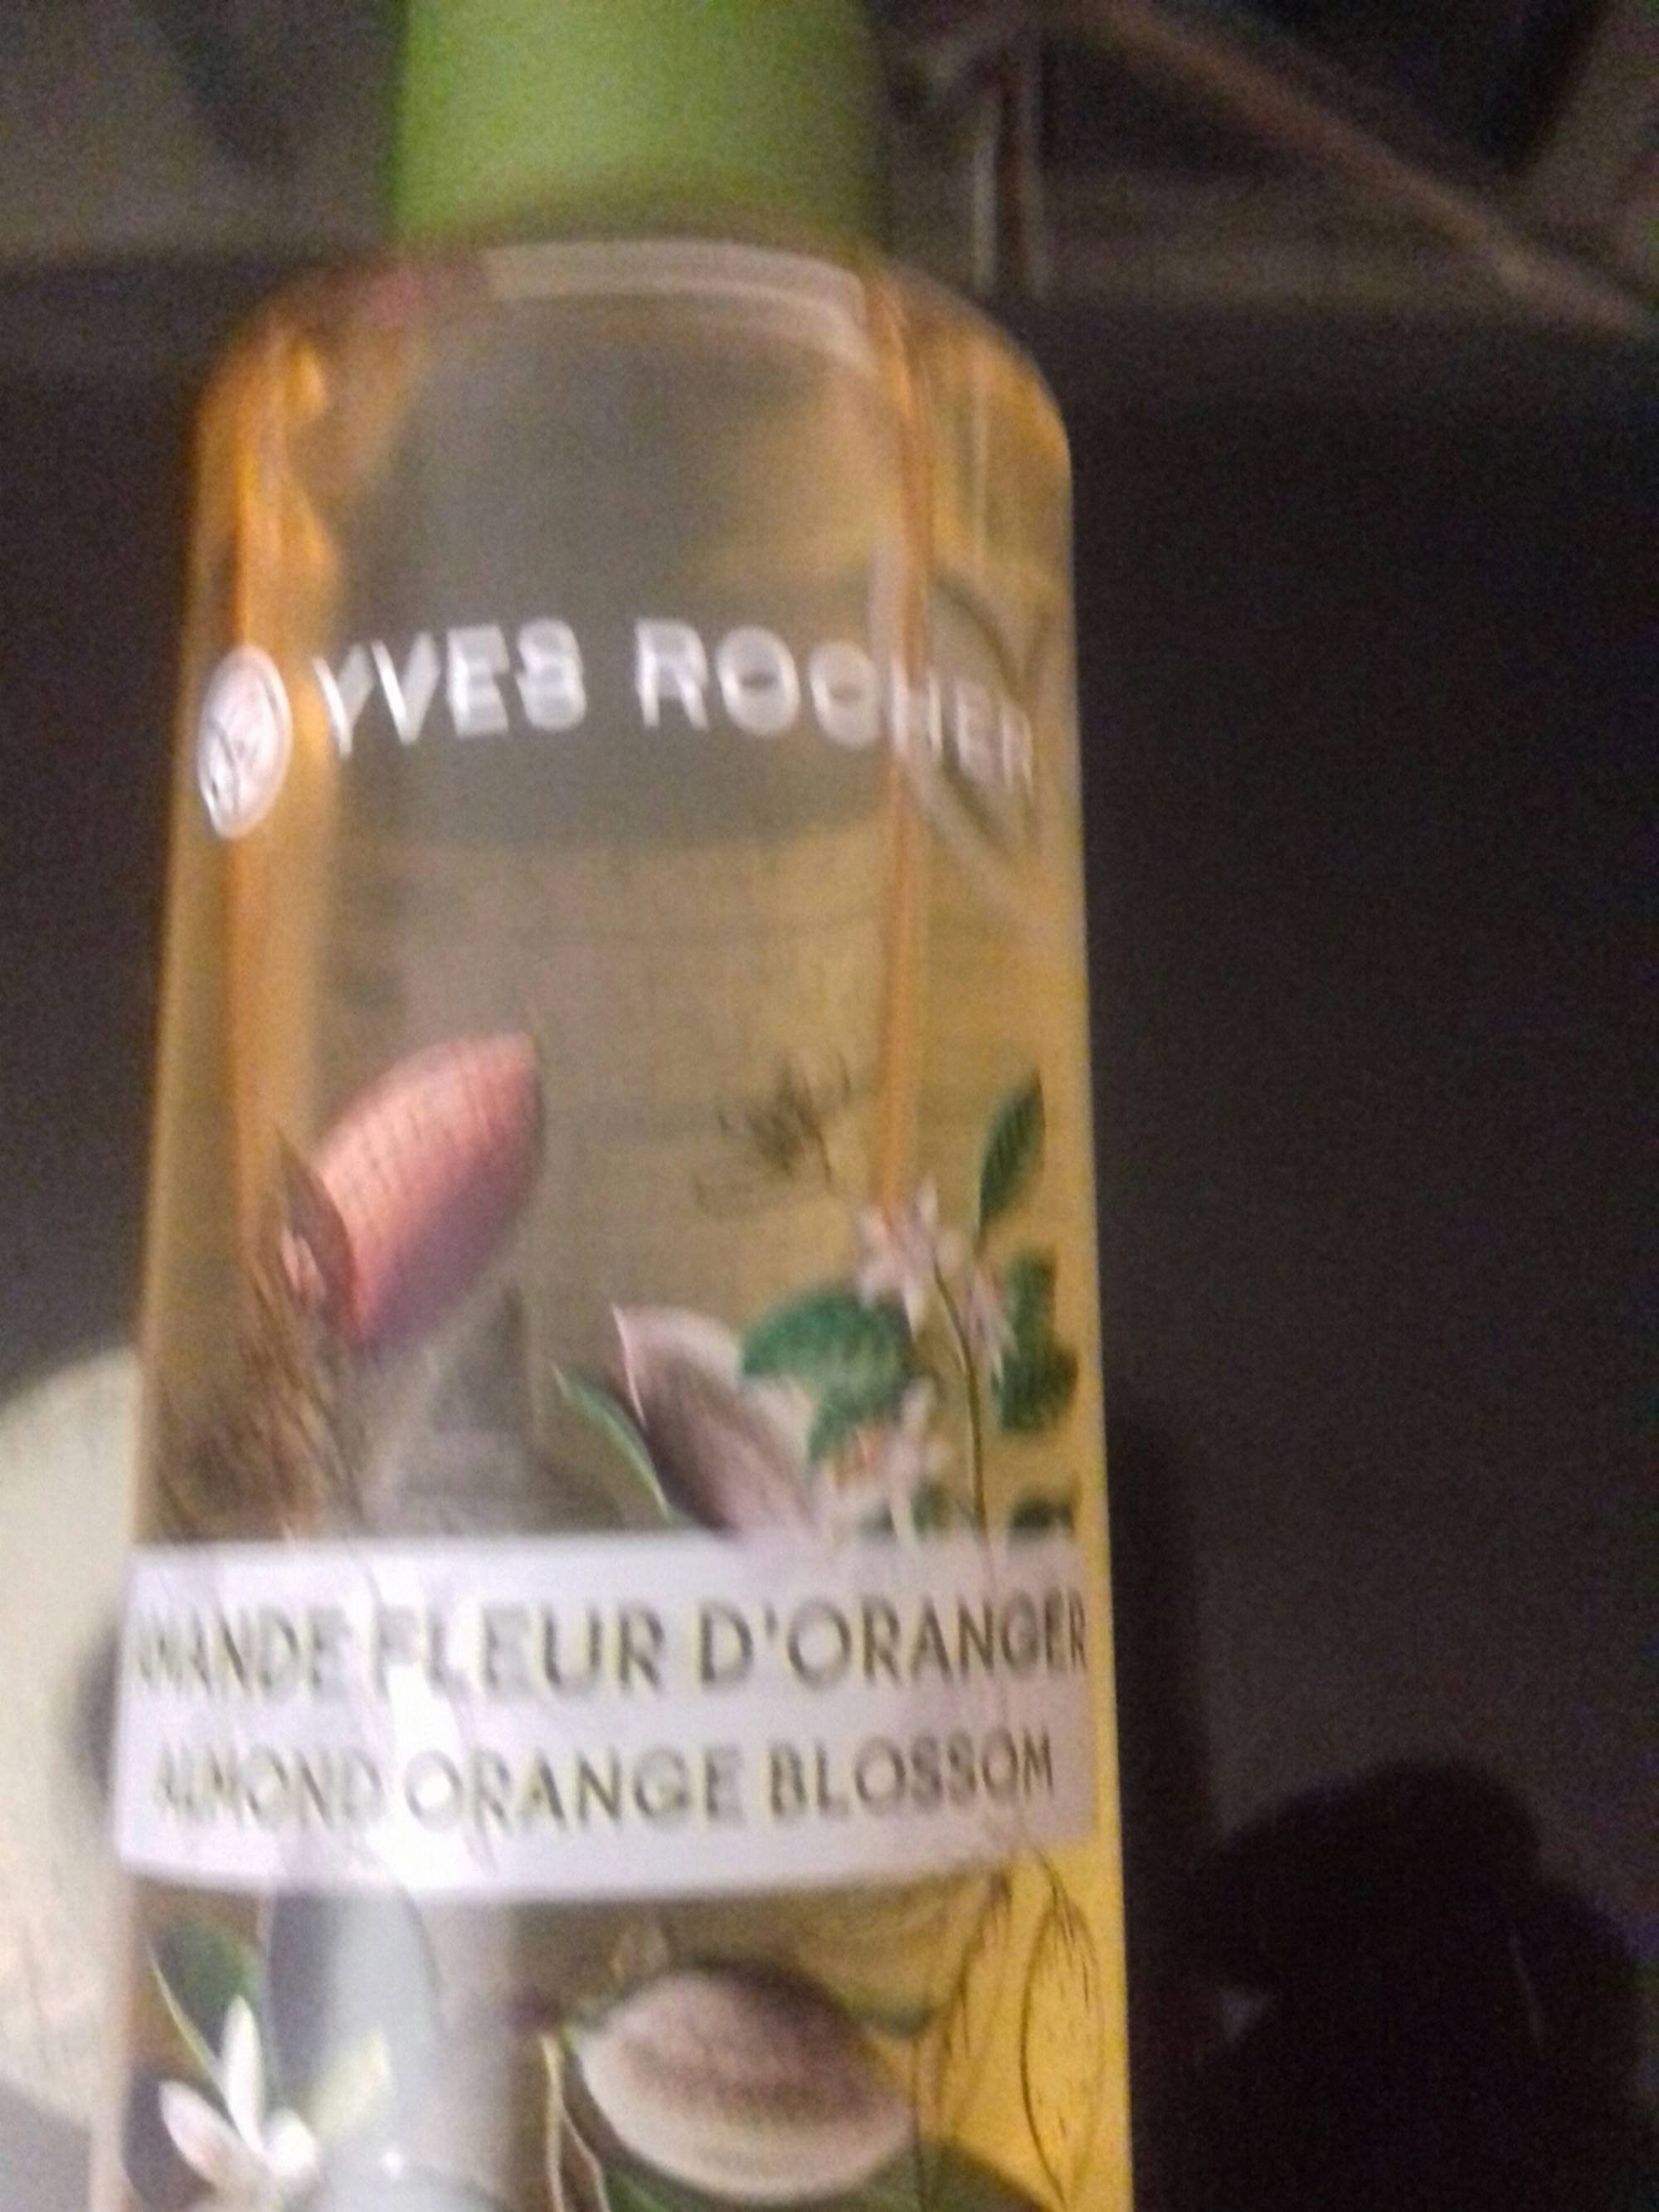 YVES ROCHER - Amande fleur d'oranger - Huile de douche relaxante